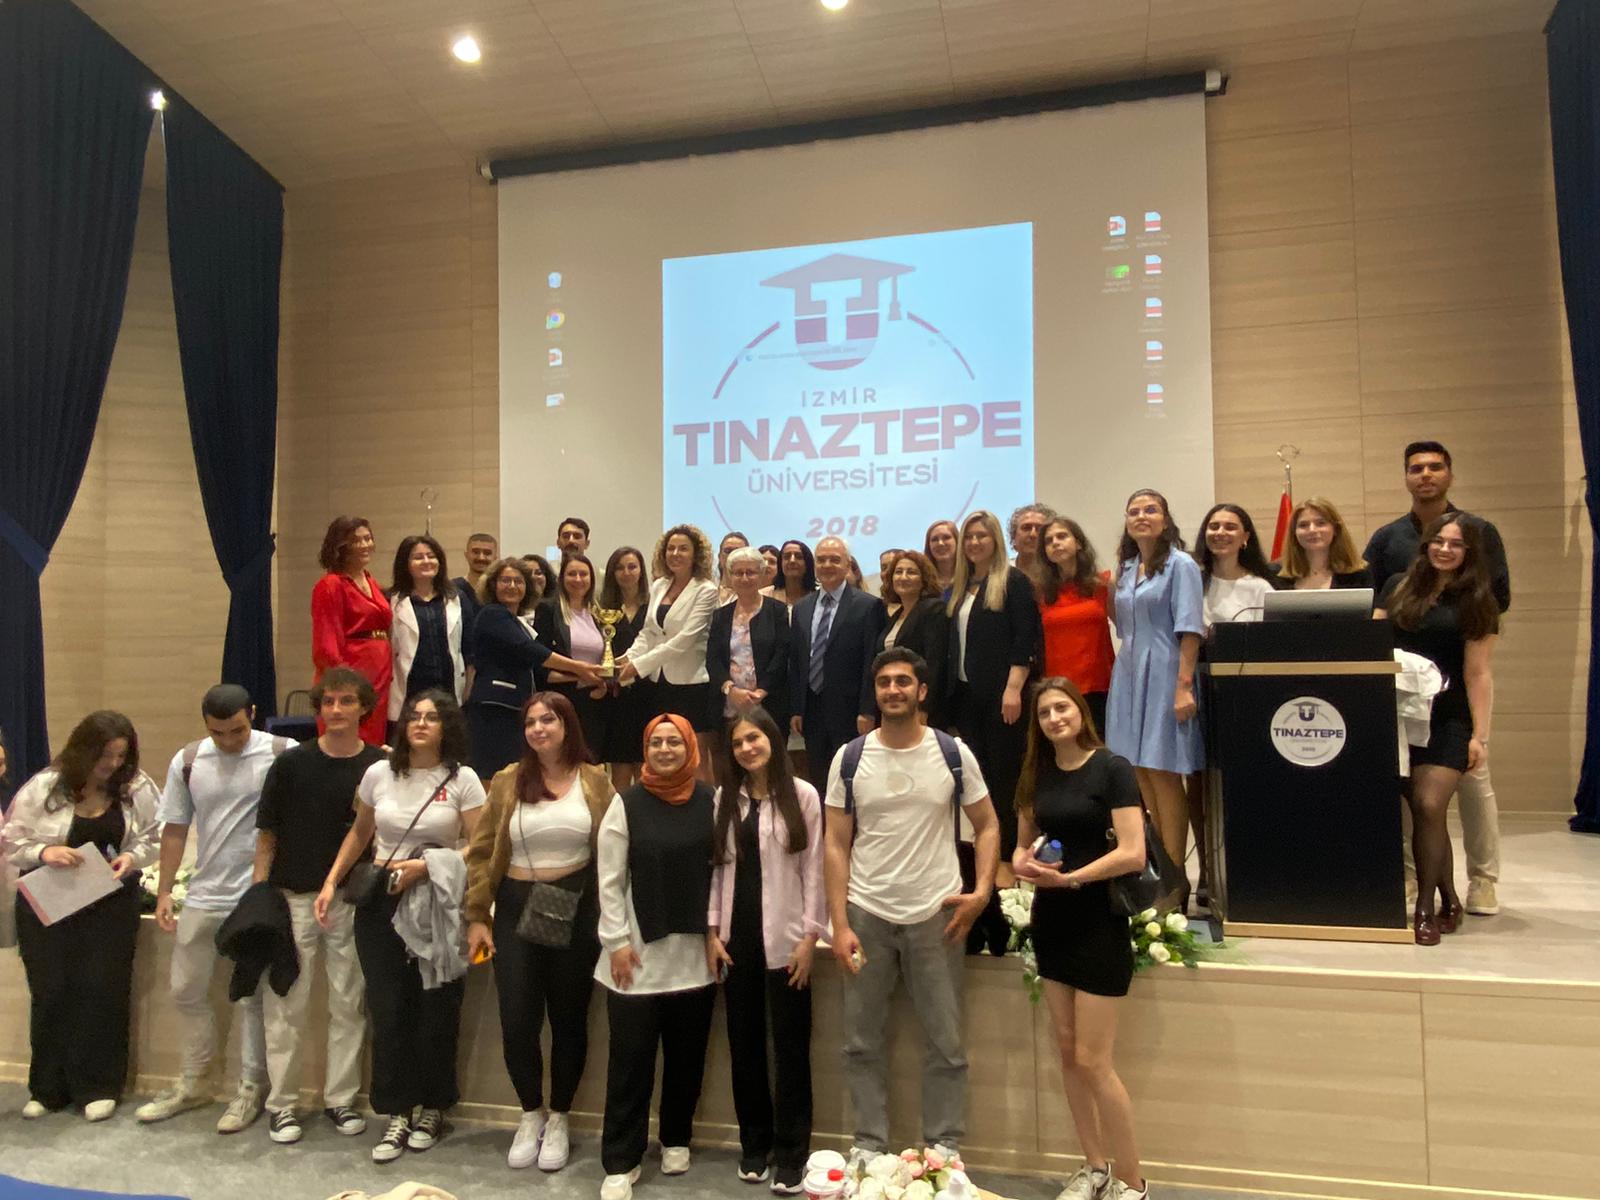 izmitinaz universitesi find and study 9 - İzmir Tınaztəpə Universiteti